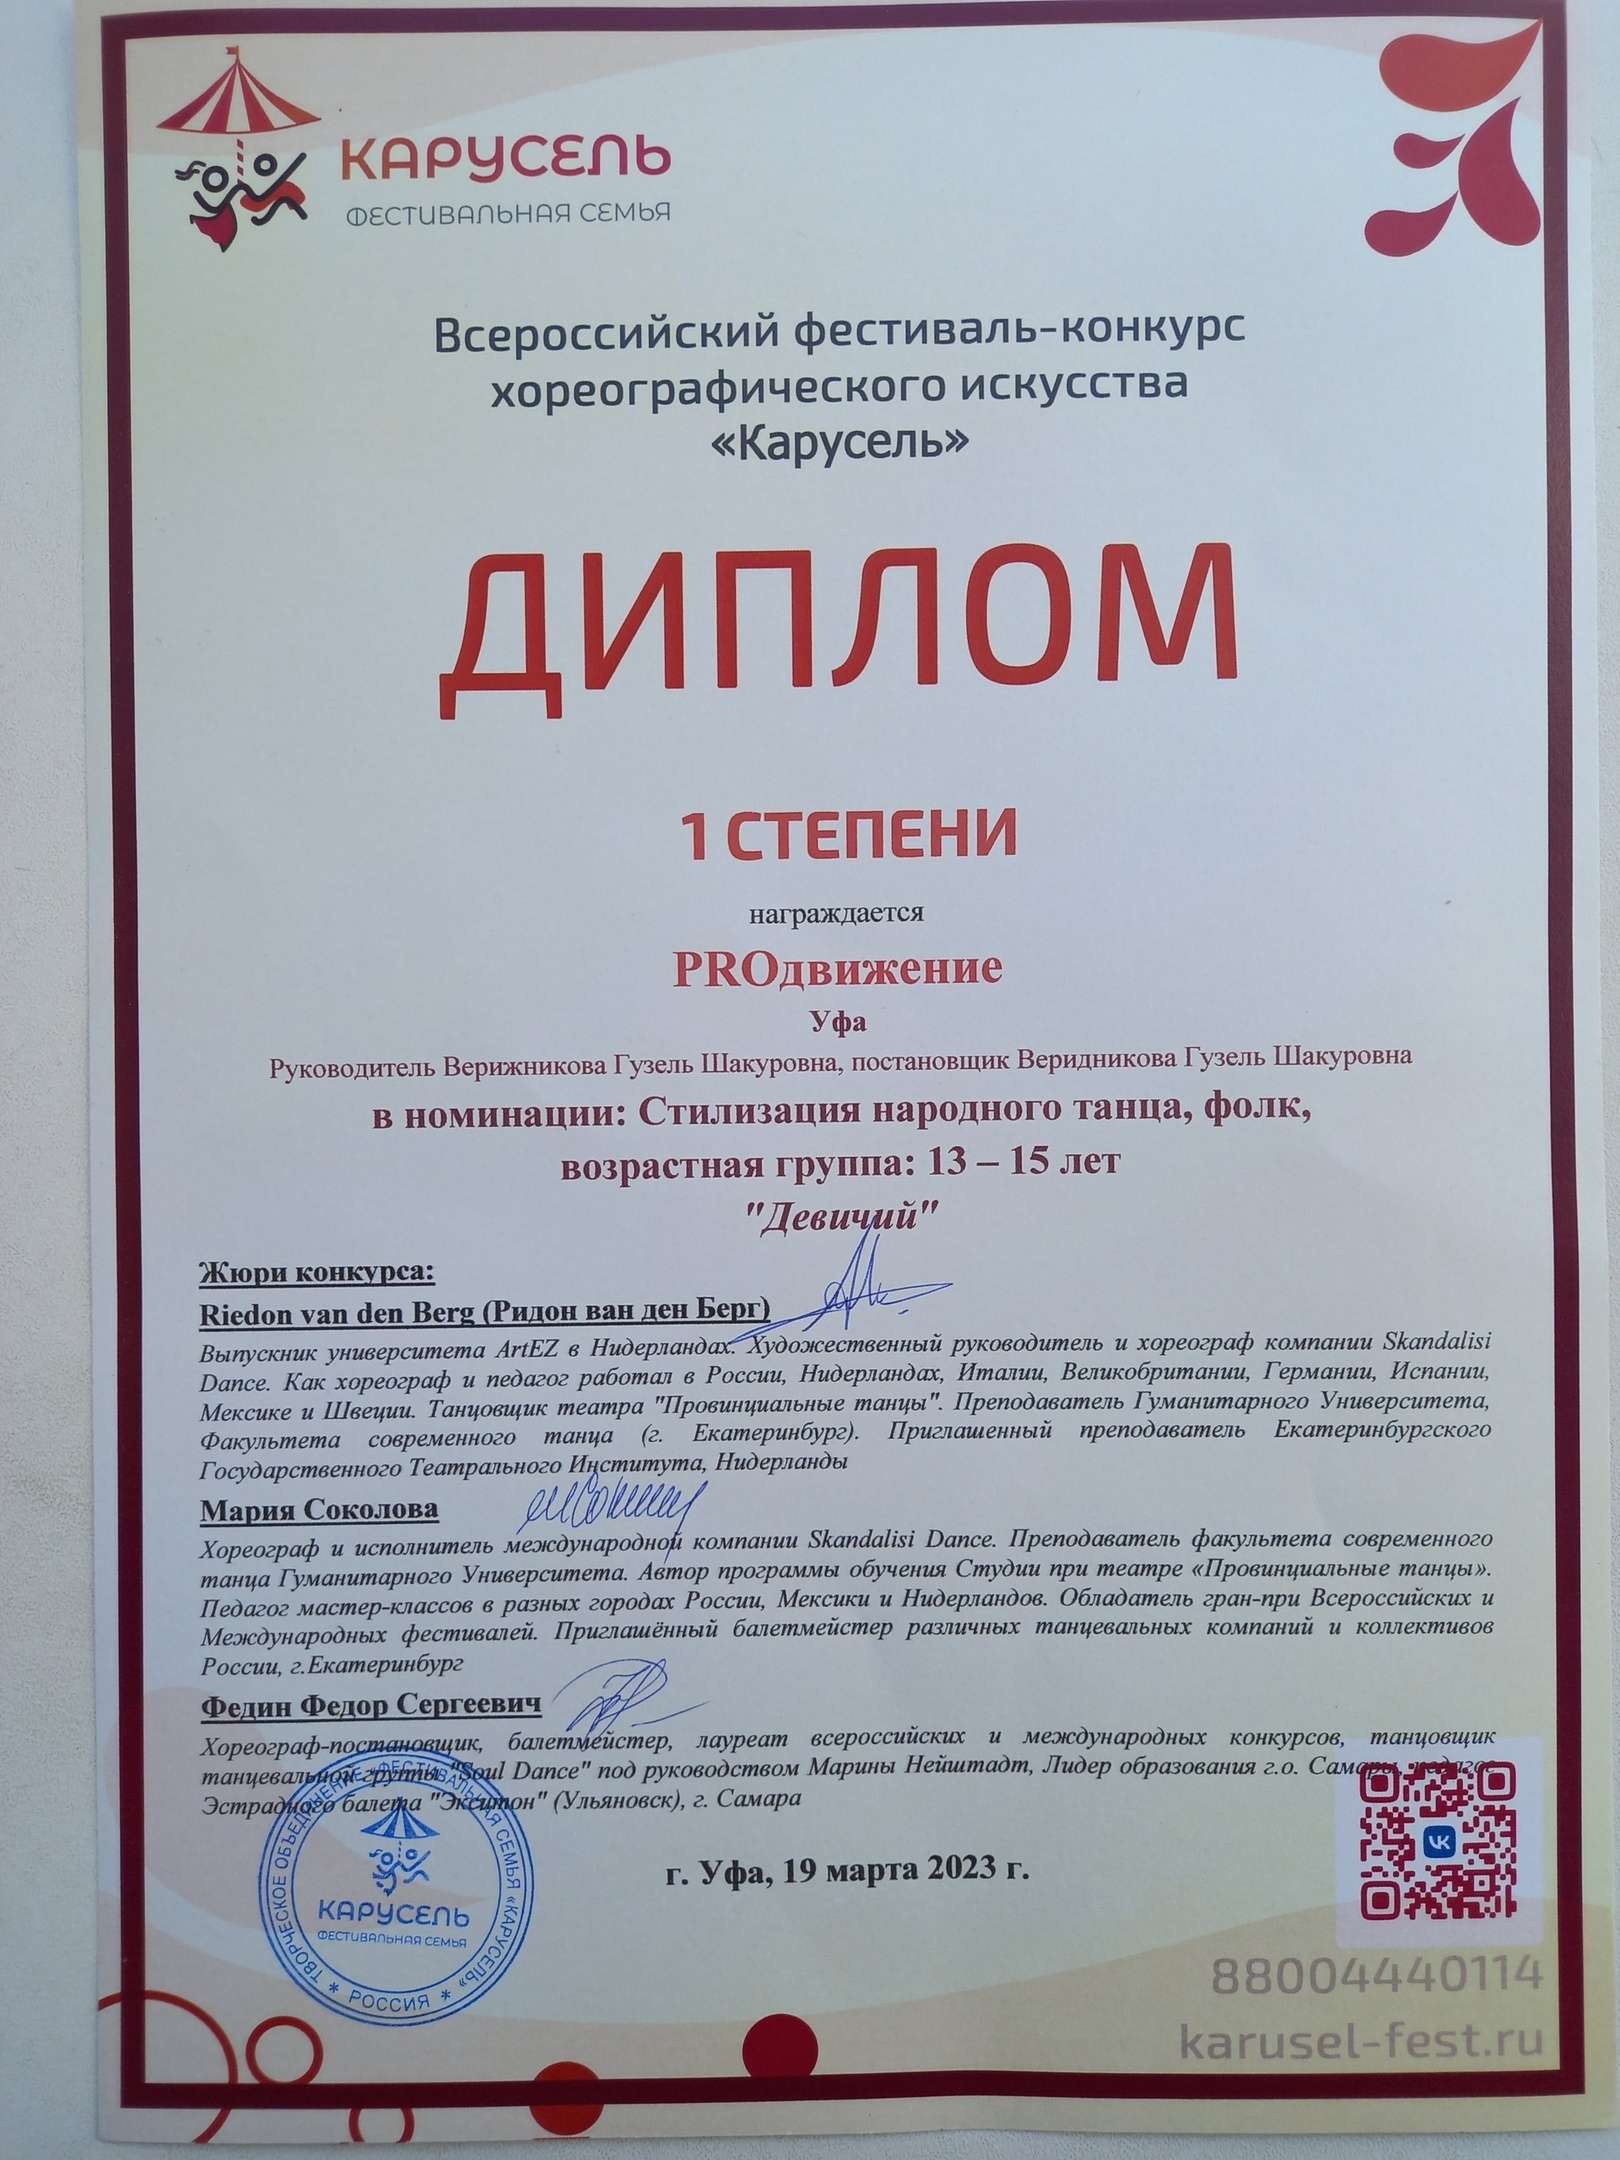 19 марта старшая группа танцевальной студии " PROдвижение" приняла участие во всероссийском танцевальном конкурсе  "Карусель" и стала дипломантом 1 степени